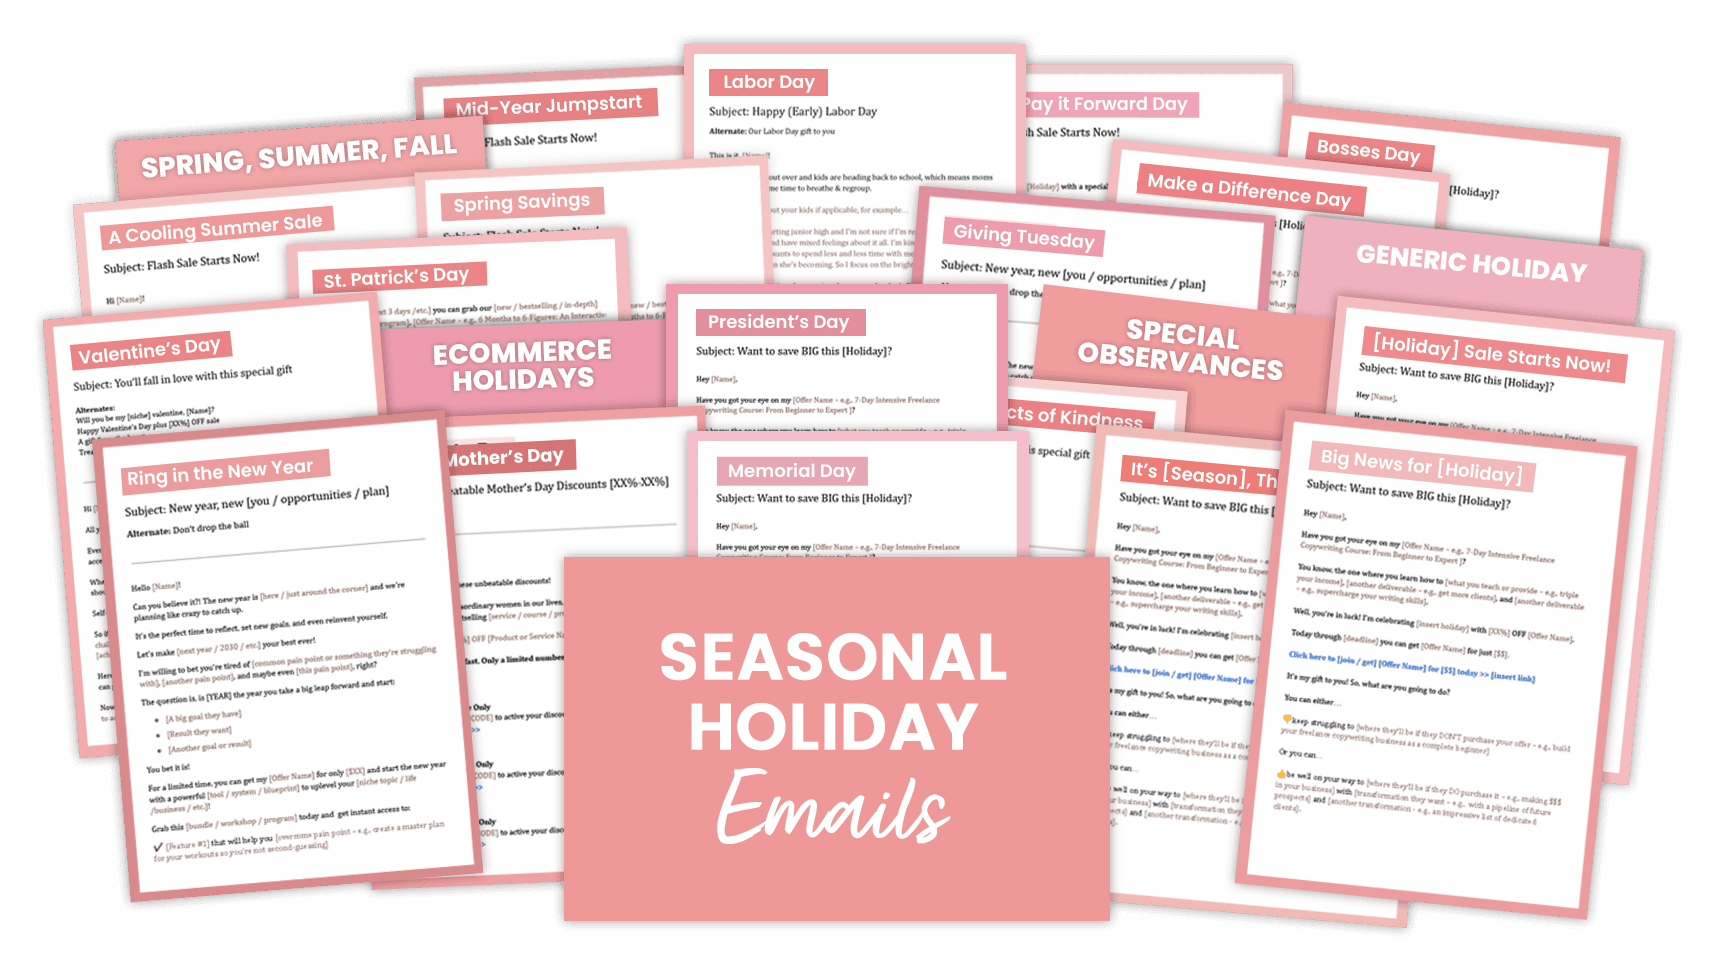 Seasonal Holidays emails